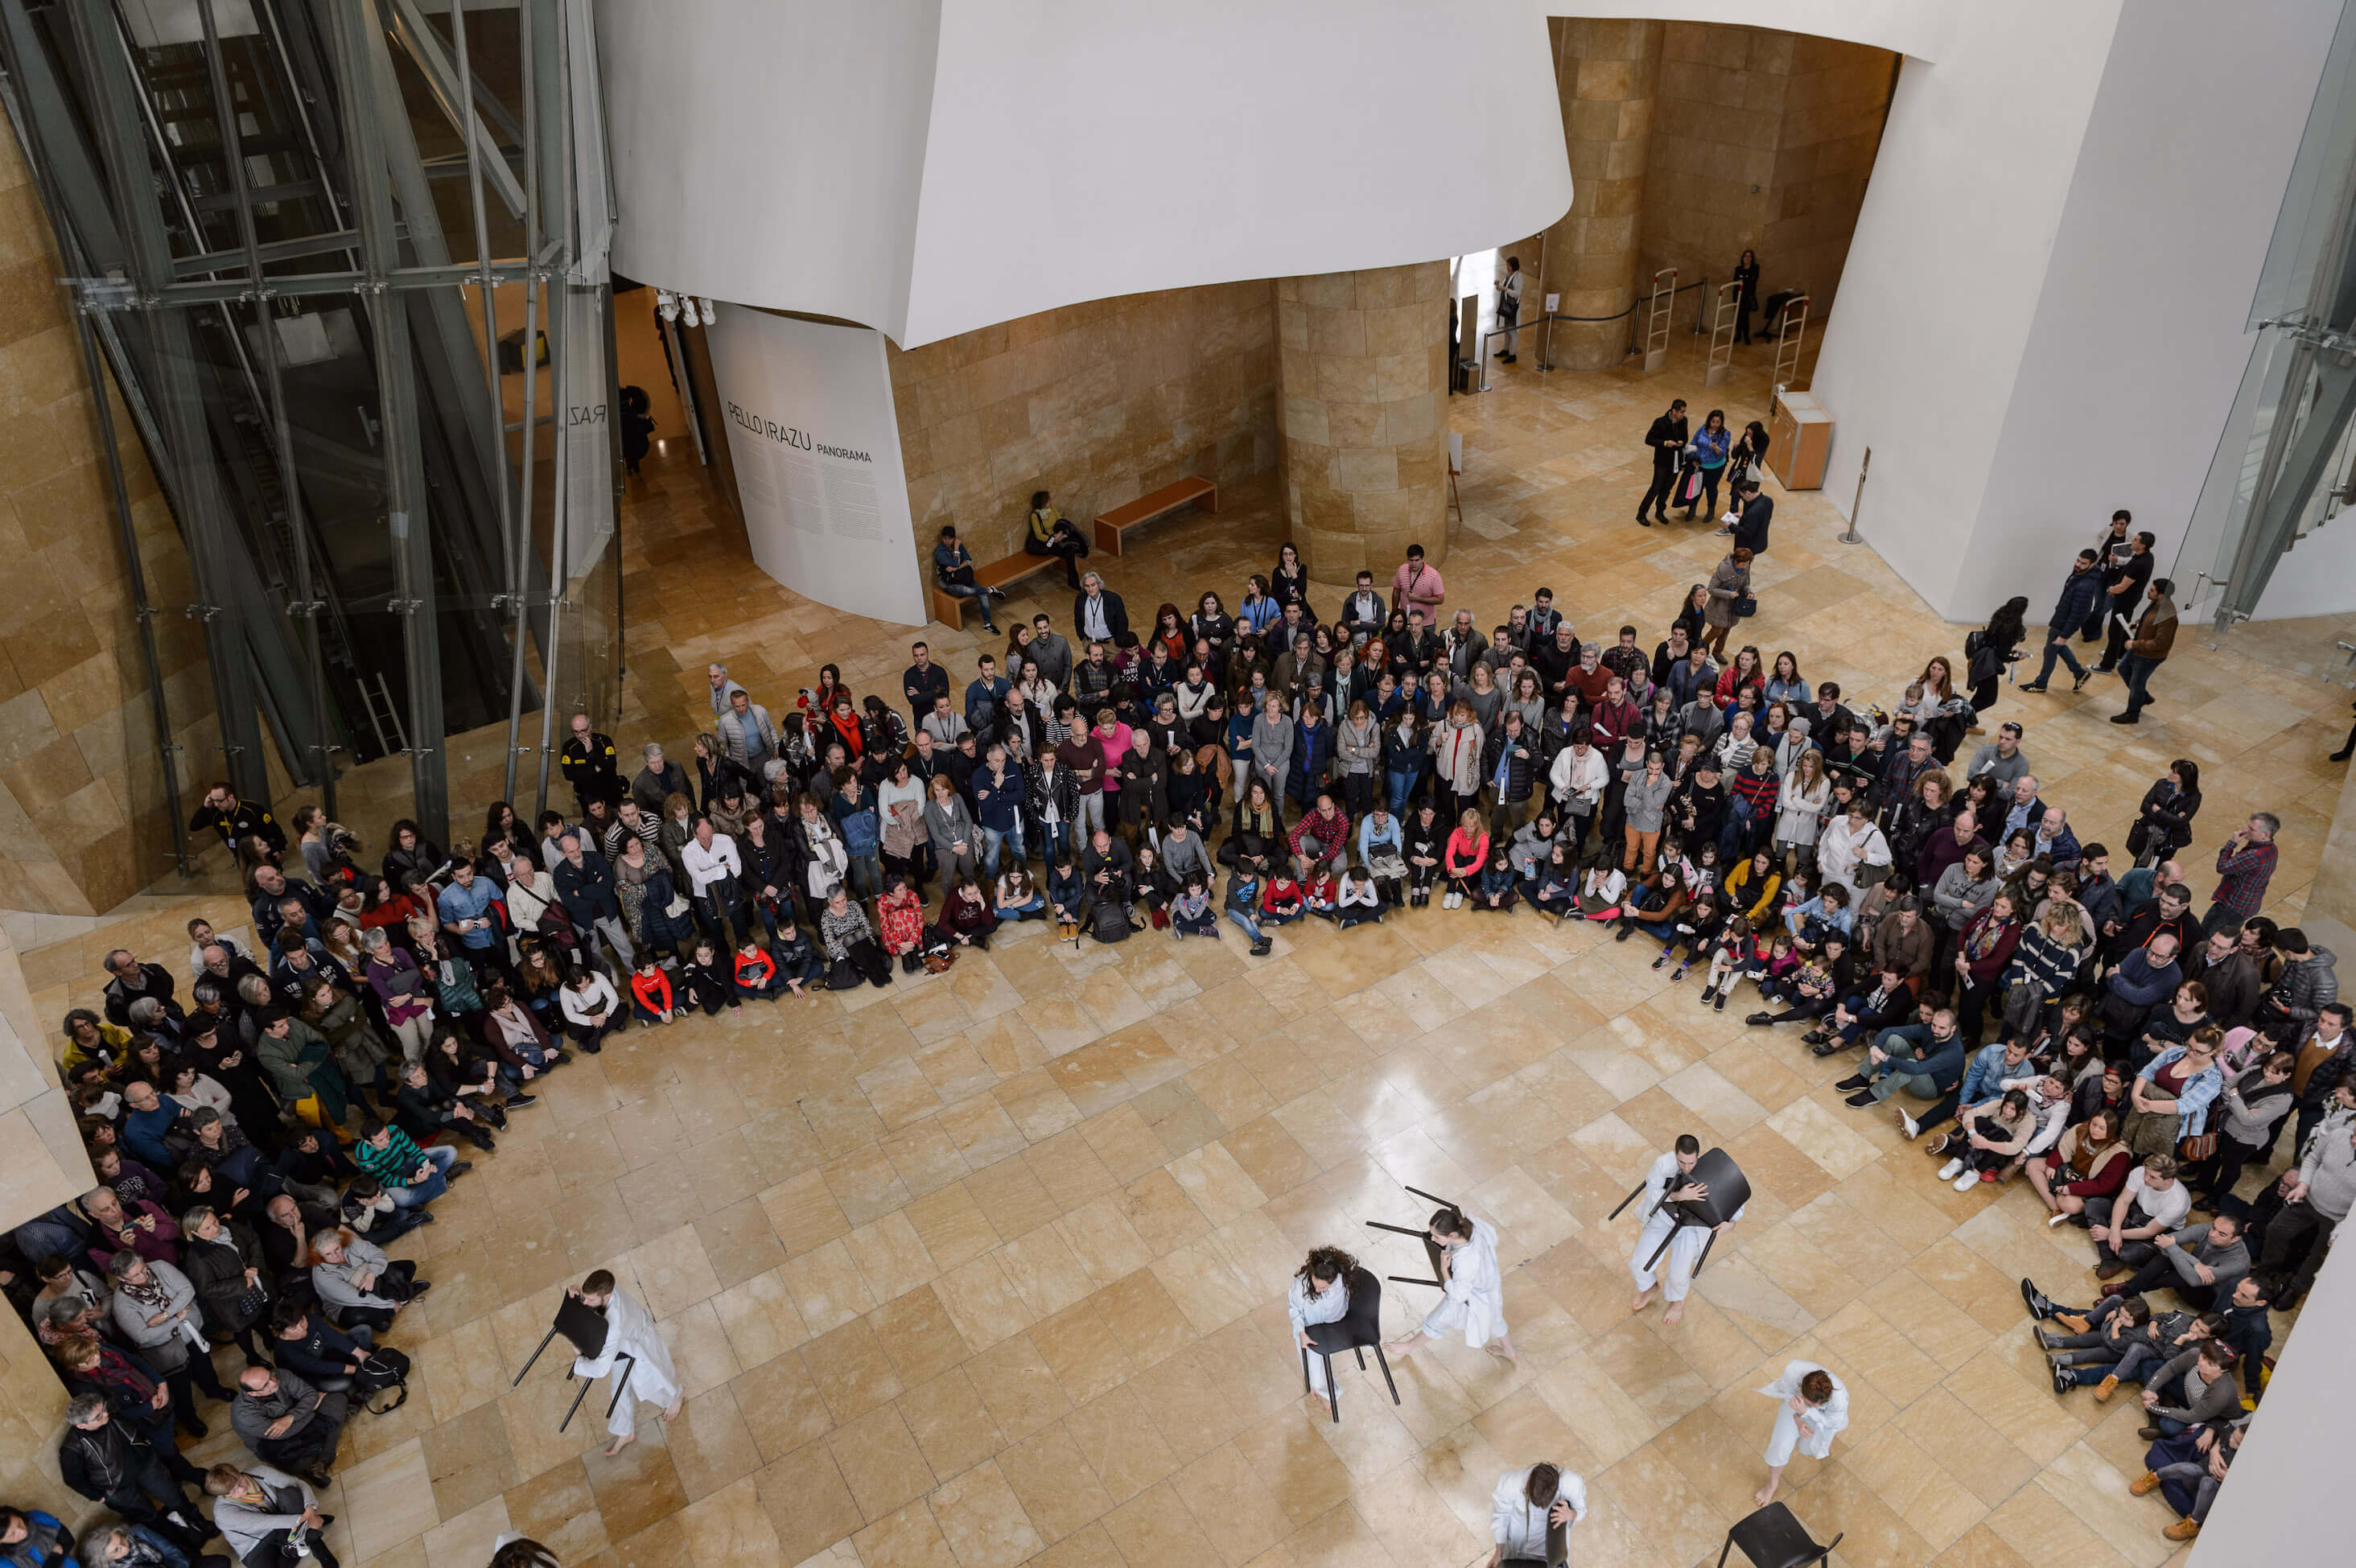 Lankidetza eta trukea | Ikasi | Guggenheim Bilbao Museoa